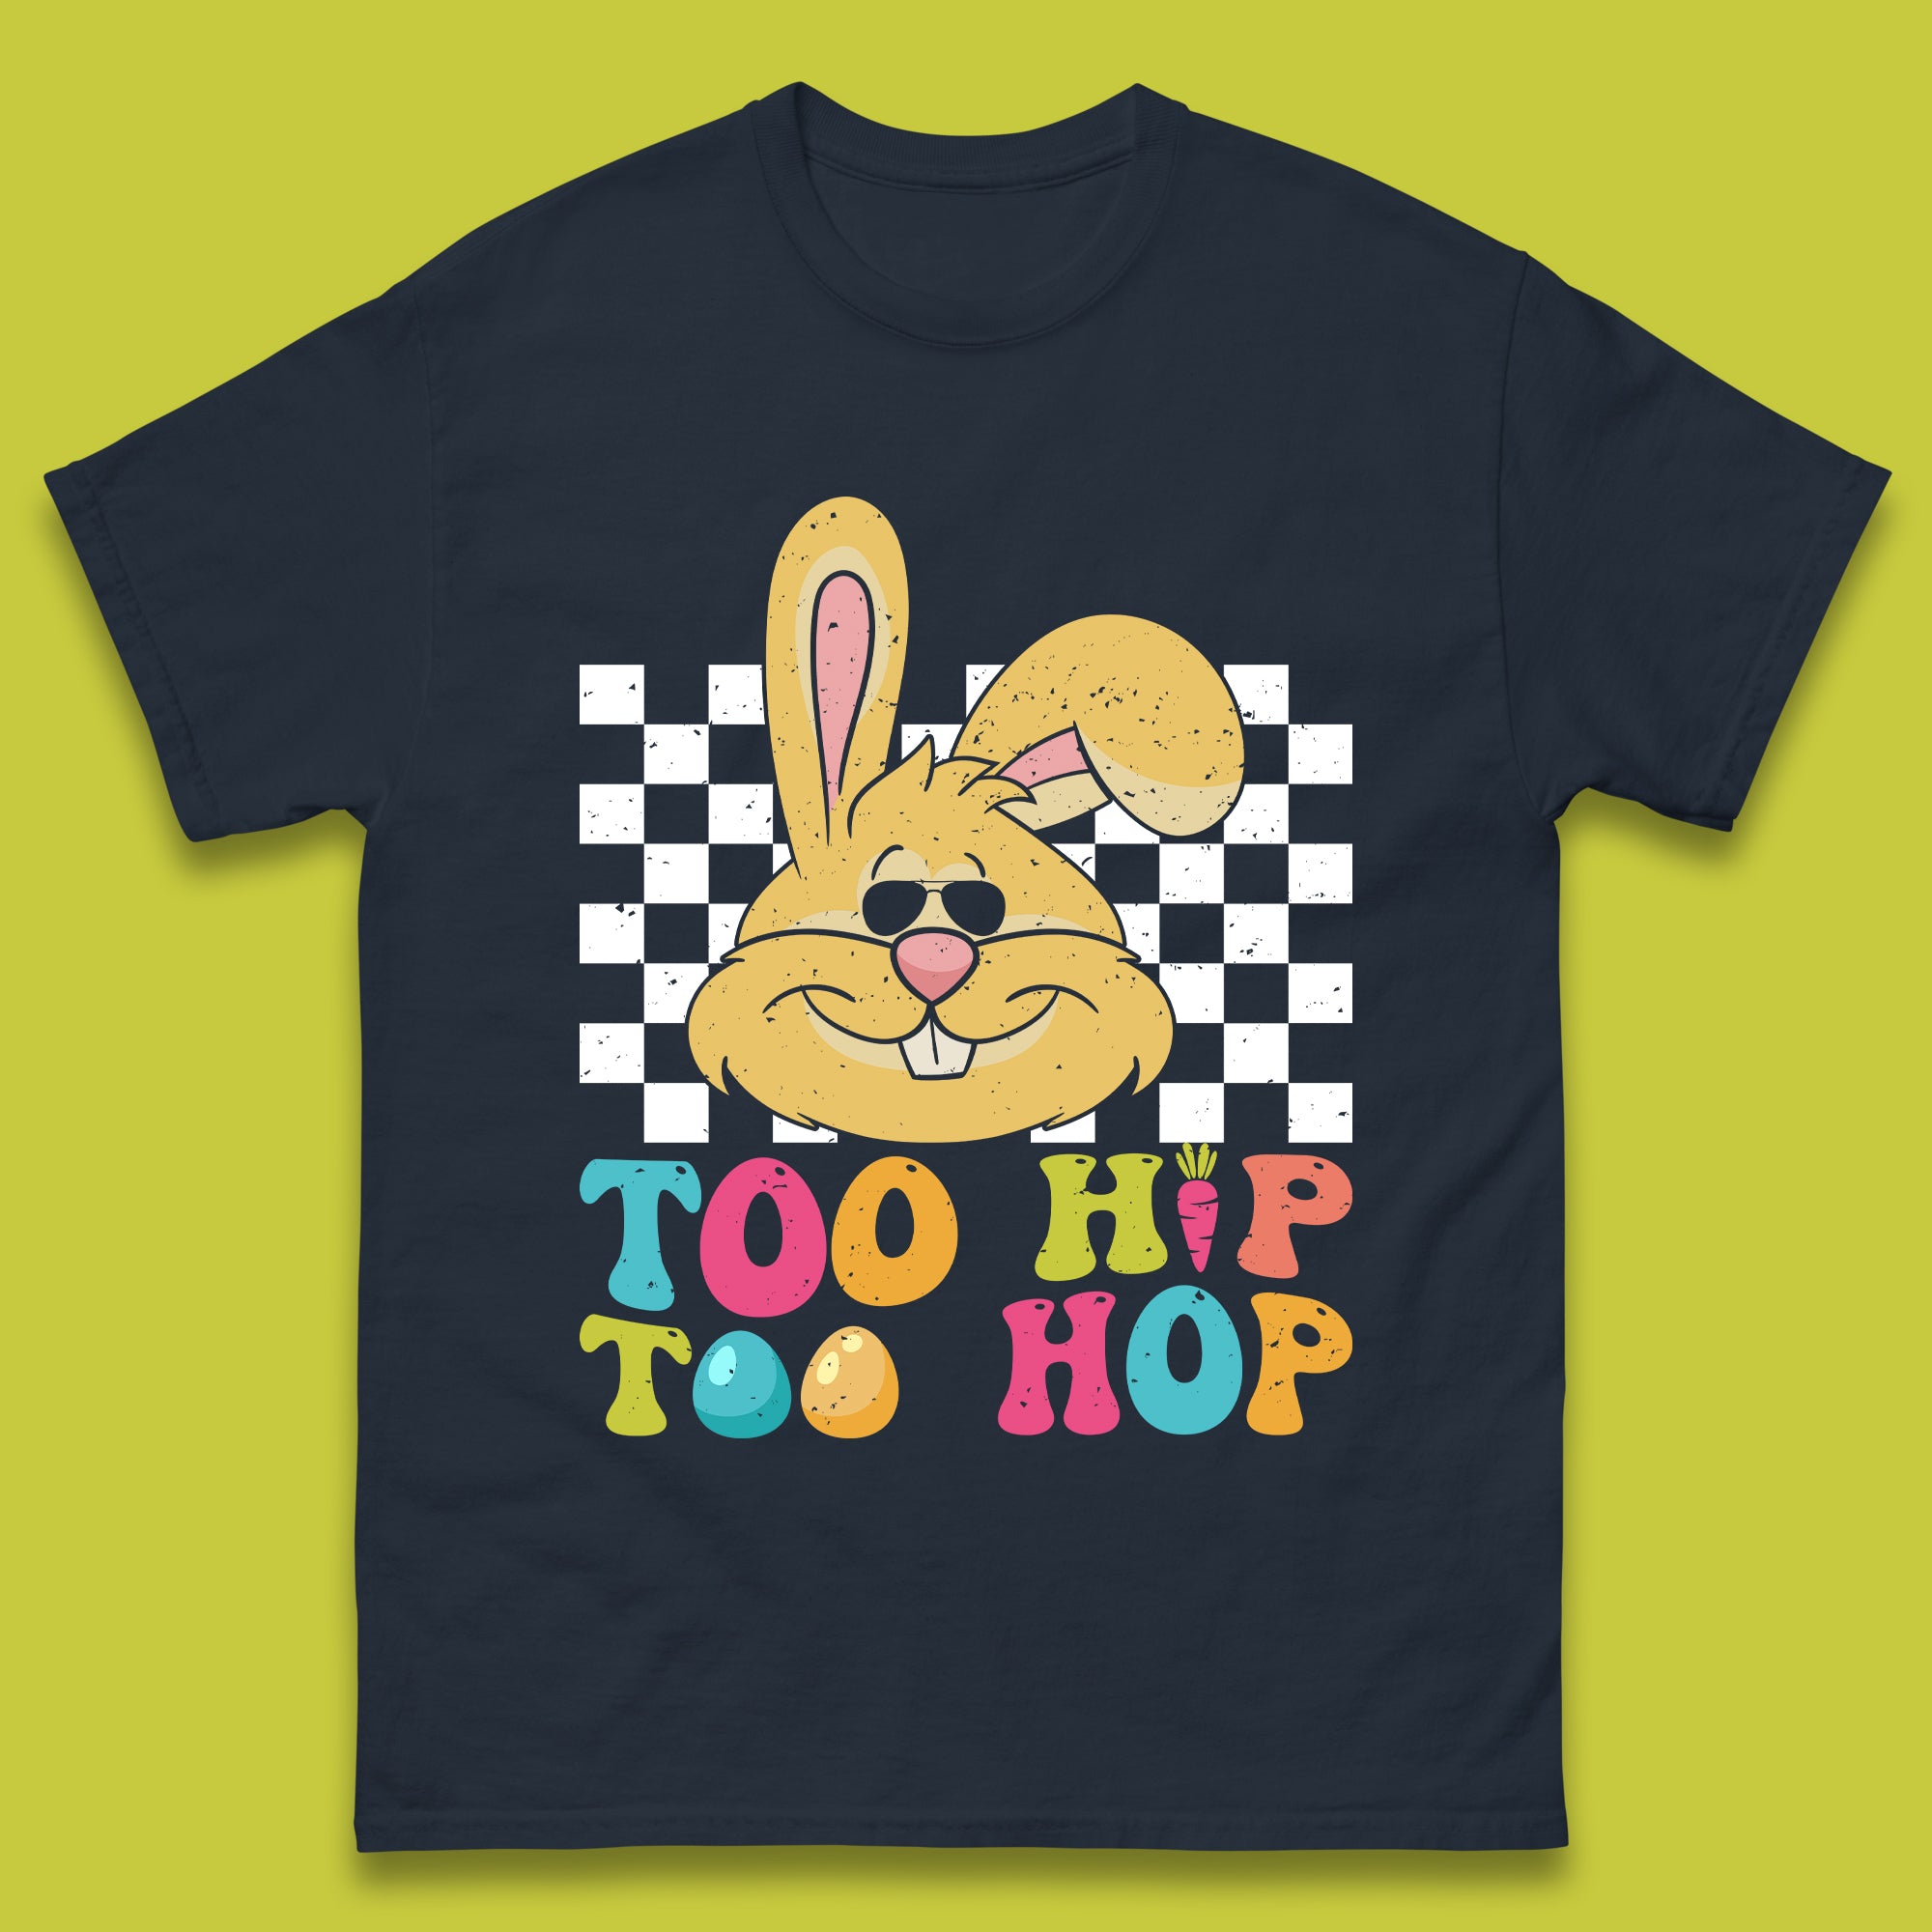 Too Hip To Hop Mens T-Shirt